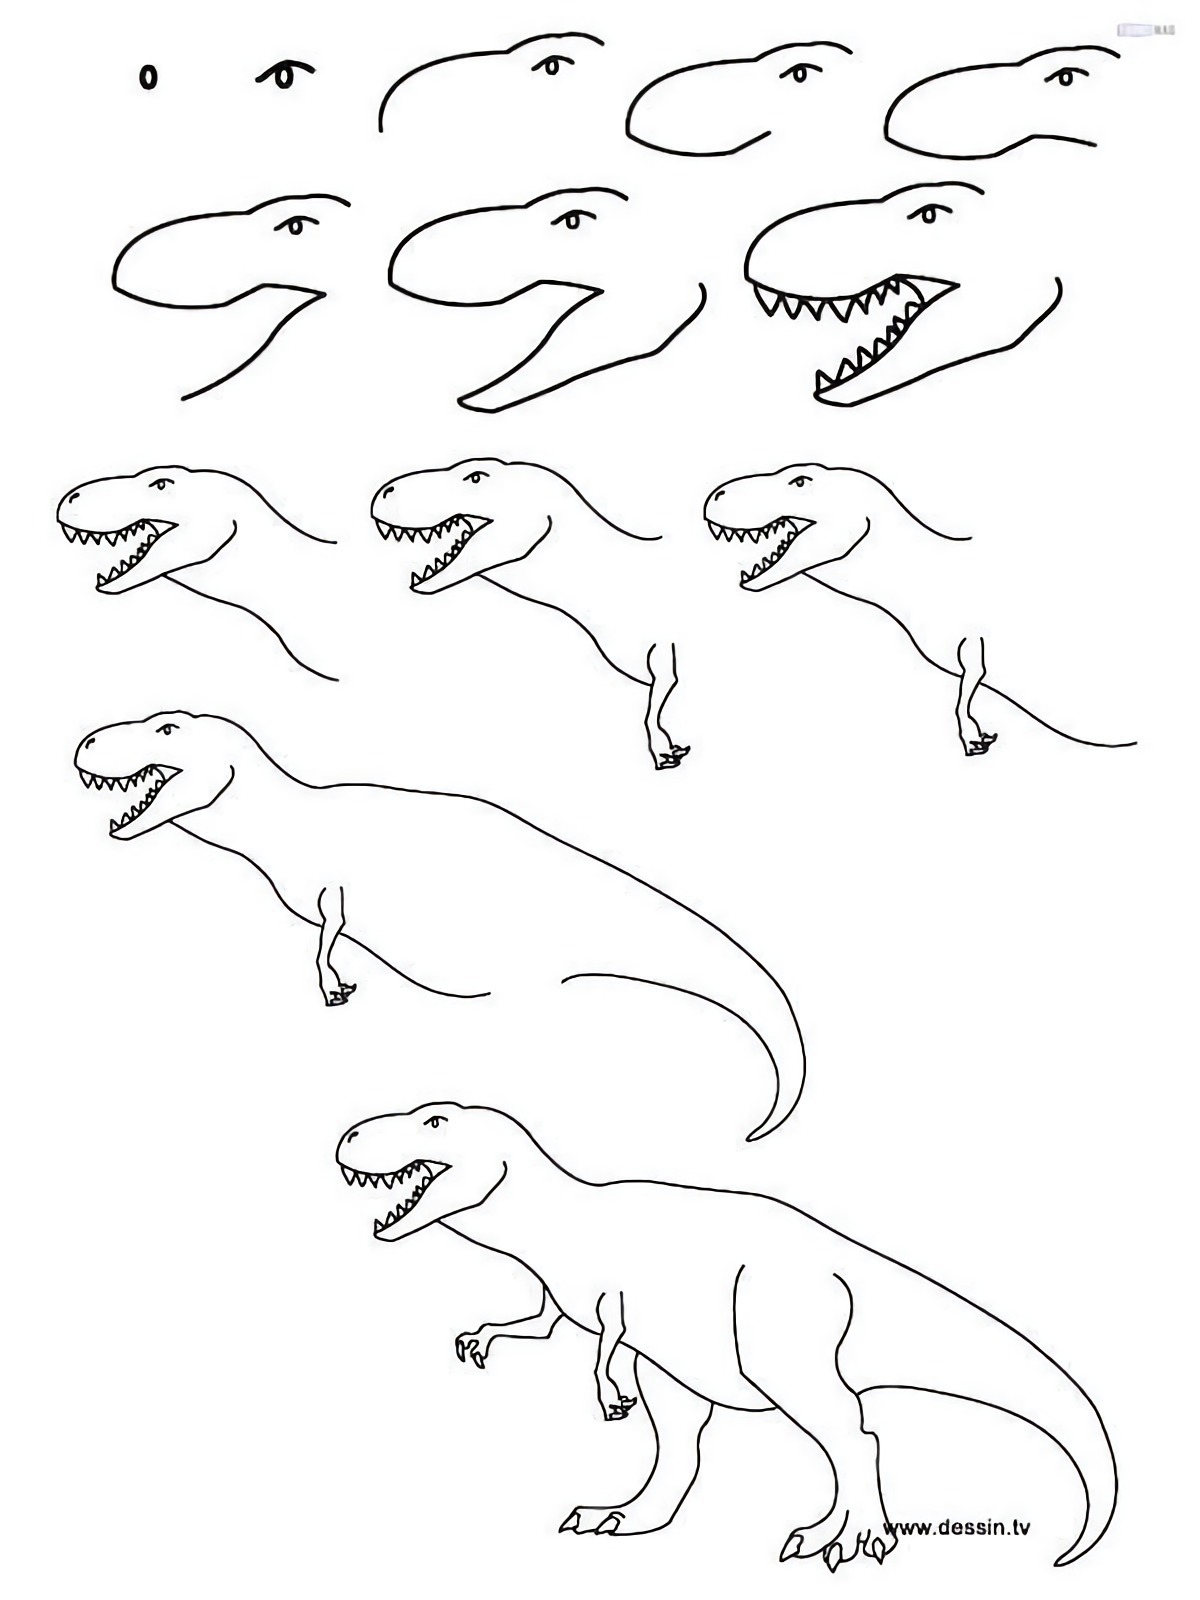 come disegnare un dinosauro tutorial da seguire